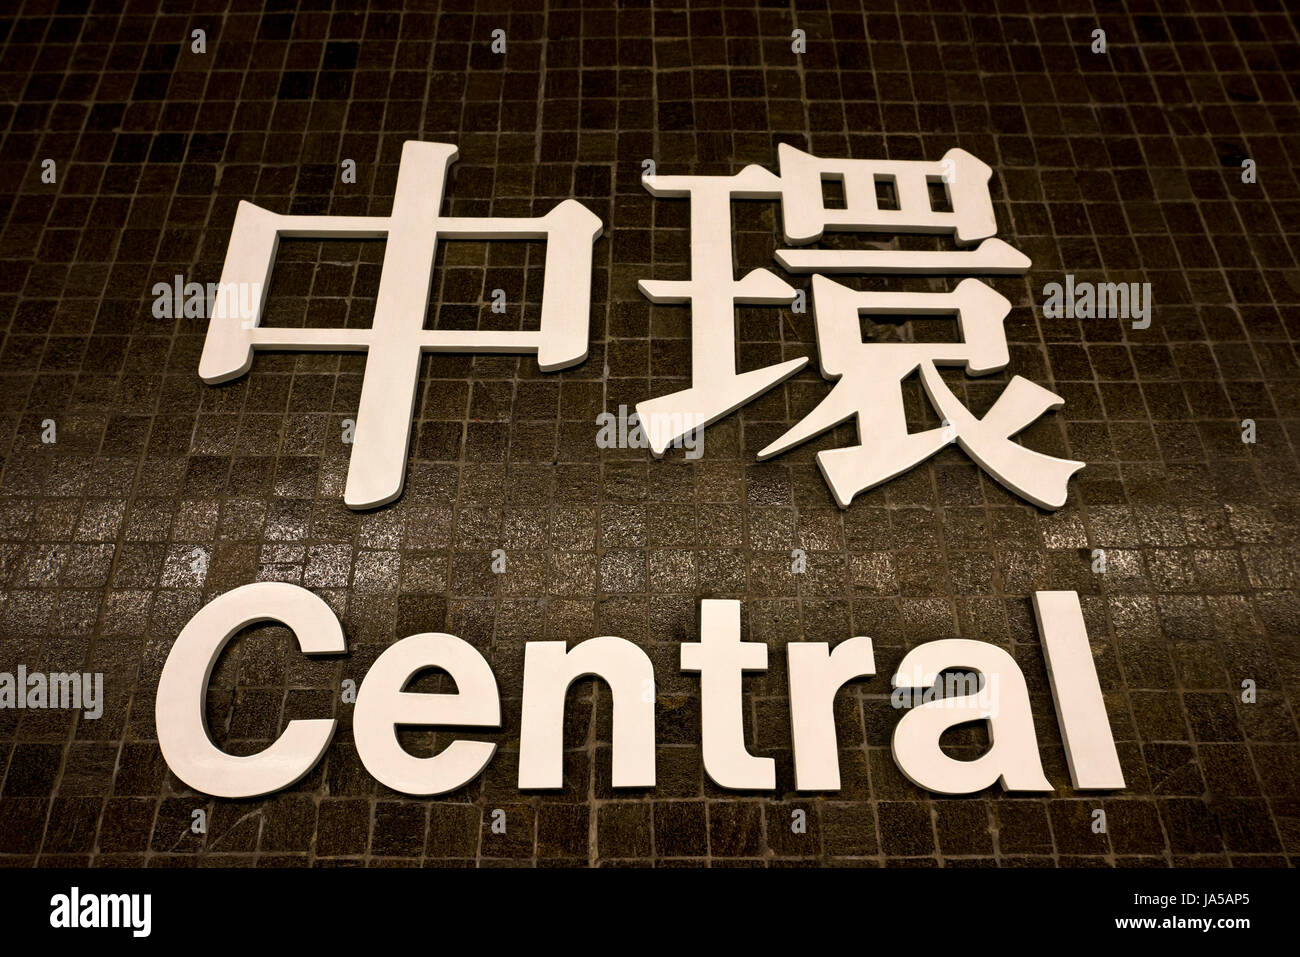 Horizontal view of the bilingual MTR (Mass Transit Railway) sign at Central in Hong Kong, China. Stock Photo